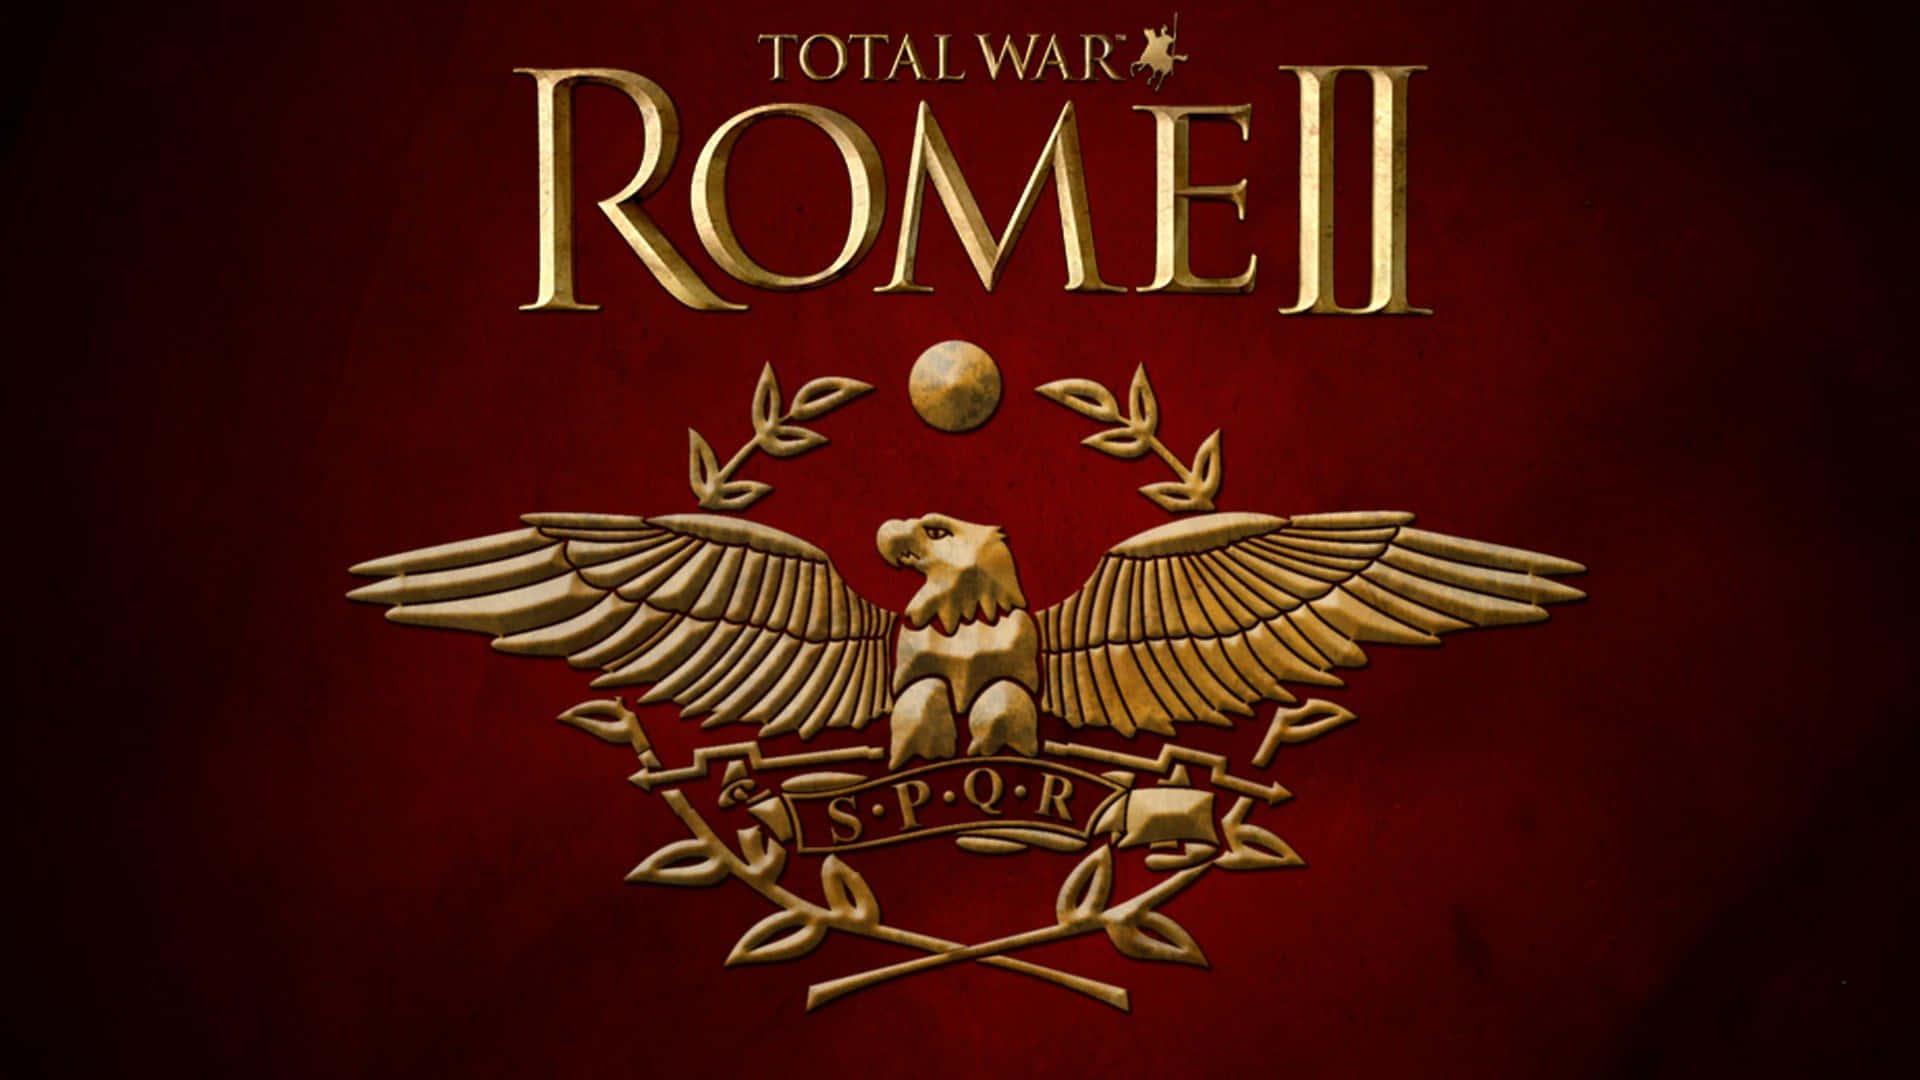 Bästatotal War Rome 2 Bakgrund Röd.